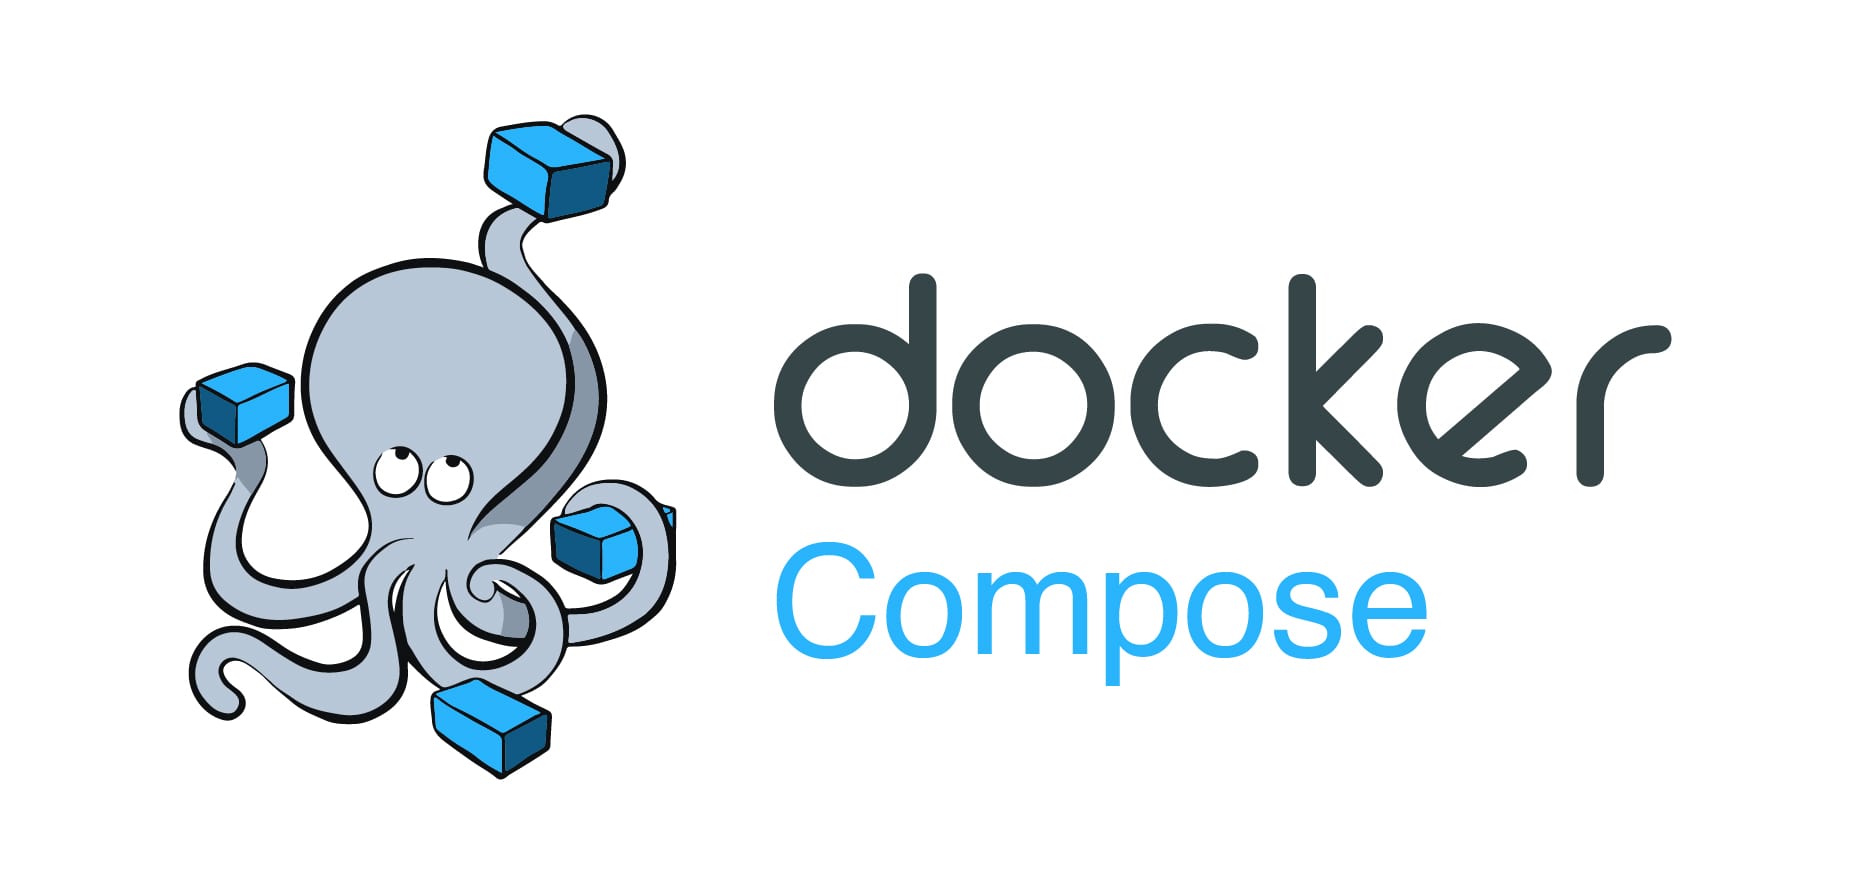 在centos7.6上利用docker-compose统一管理容器和服务